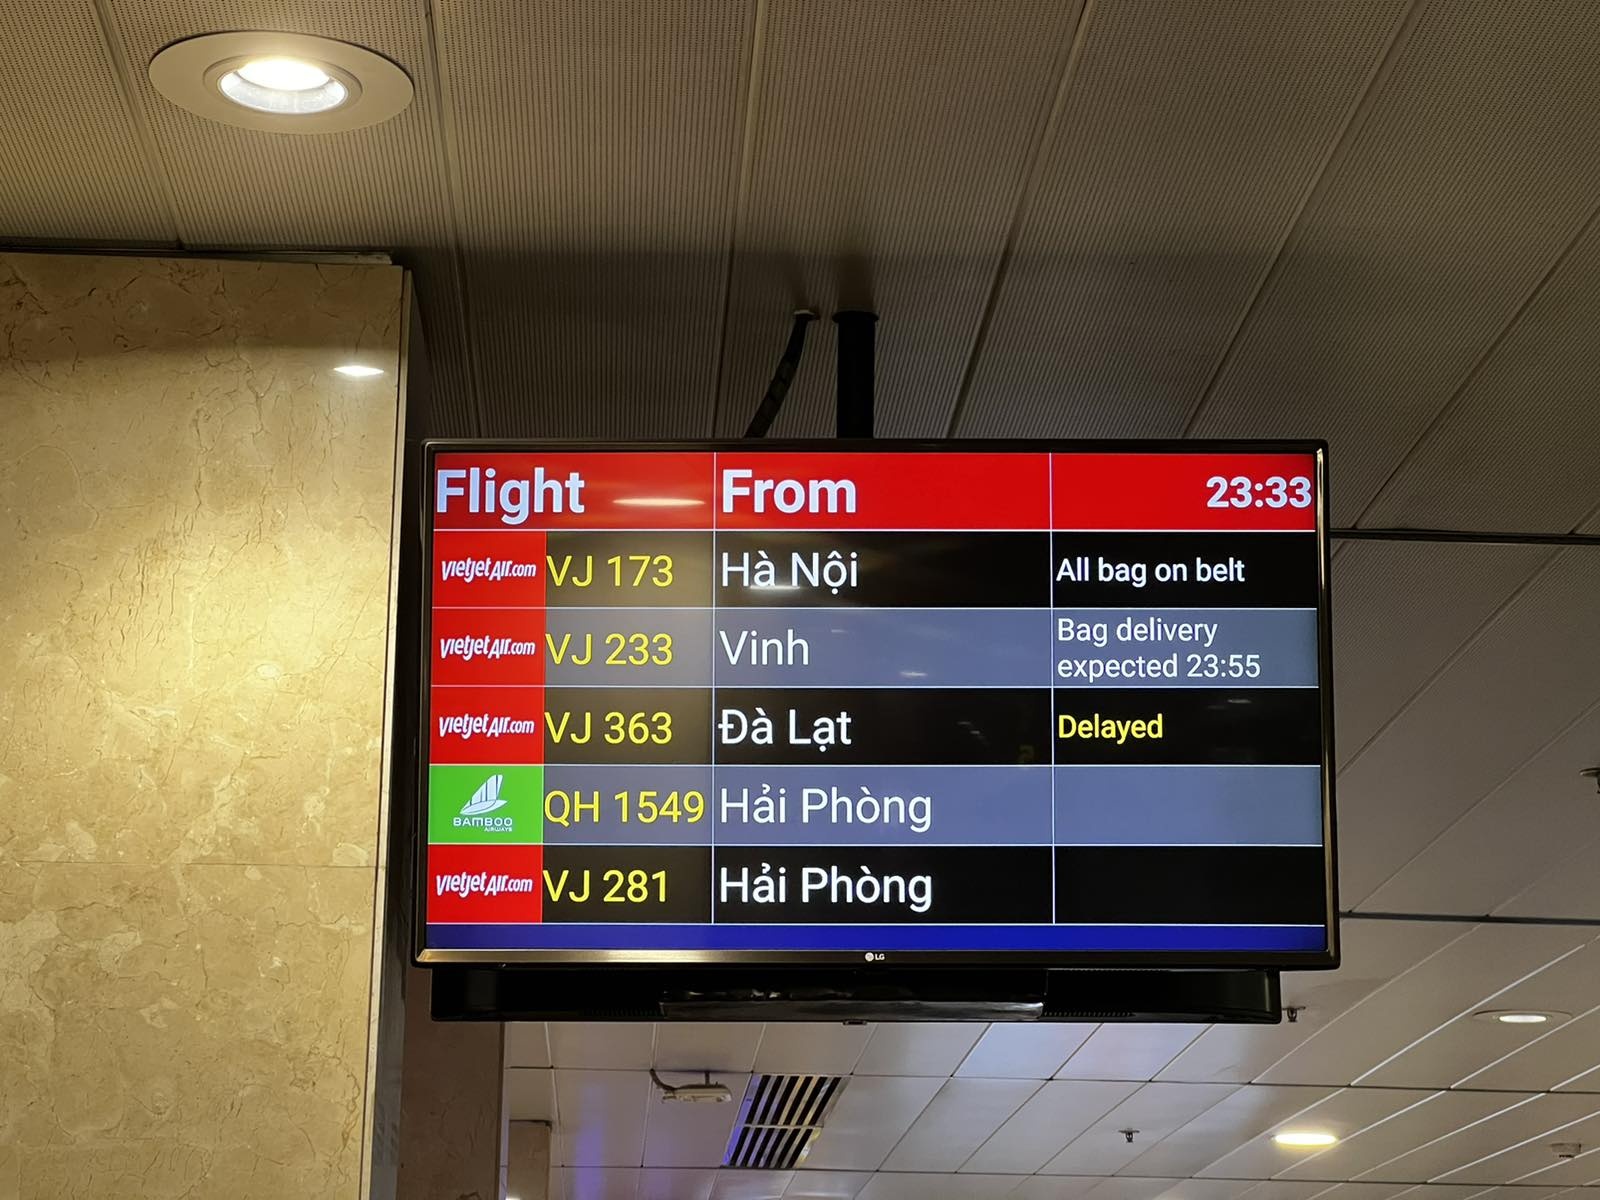 Chuyện gì đang xảy ra với những băng chuyền hành lý ở sân bay Tân Sơn Nhất? - Hình 2